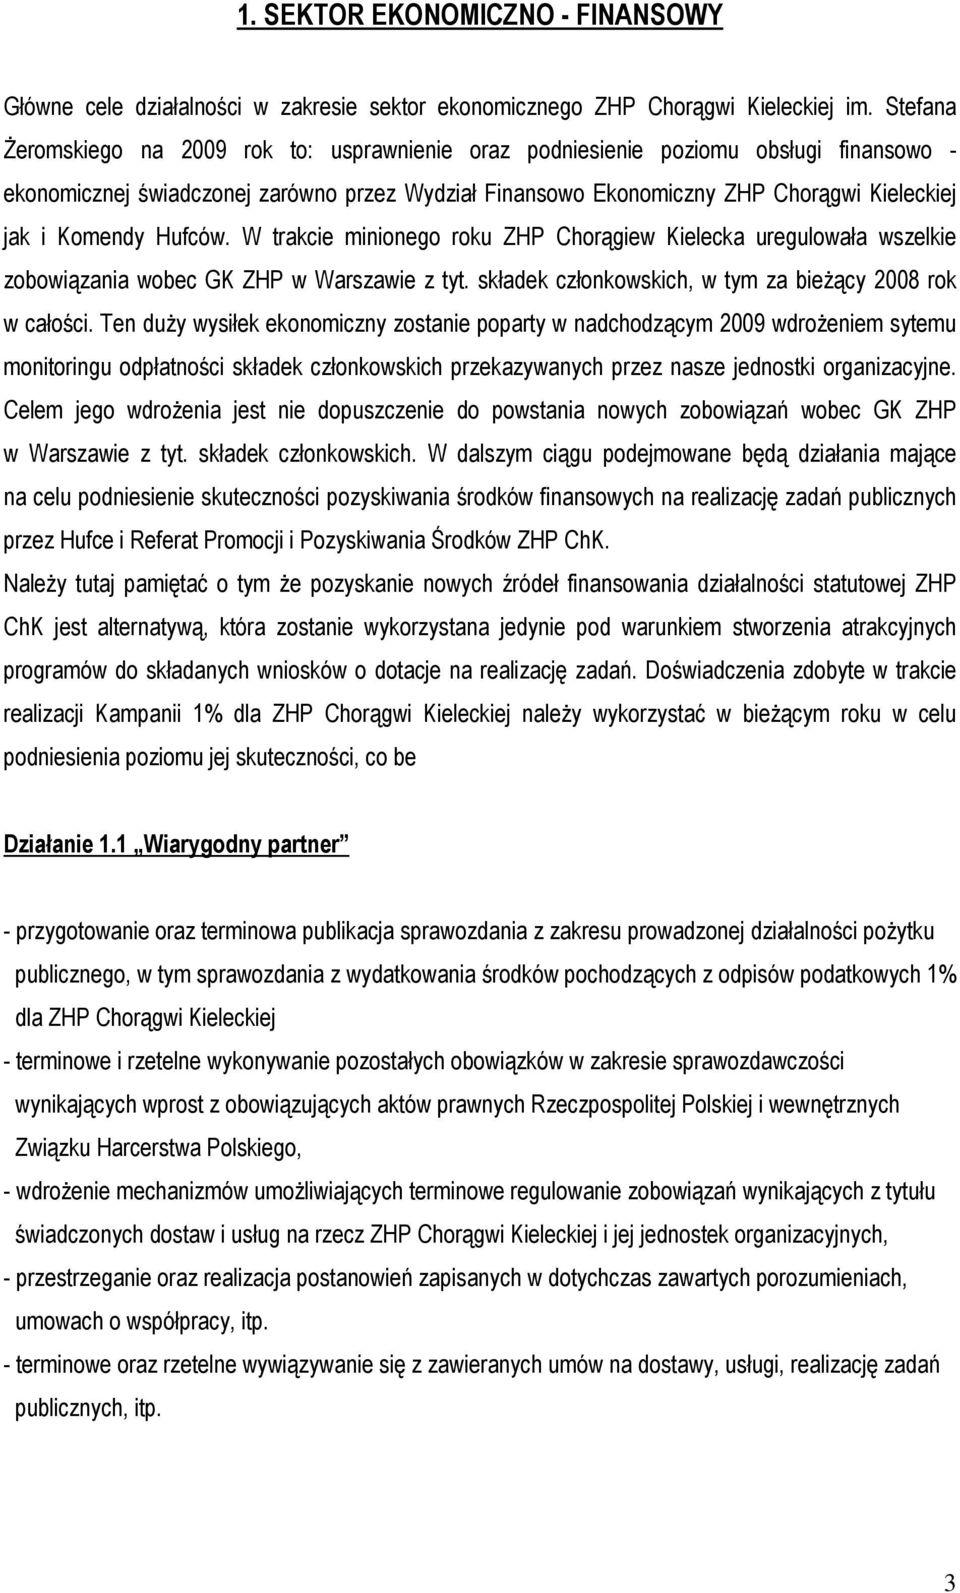 Komendy Hufców. W trakcie minionego roku ZHP Chorągiew Kielecka uregulowała wszelkie zobowiązania wobec GK ZHP w Warszawie z tyt. składek członkowskich, w tym za bieżący 2008 rok w całości.